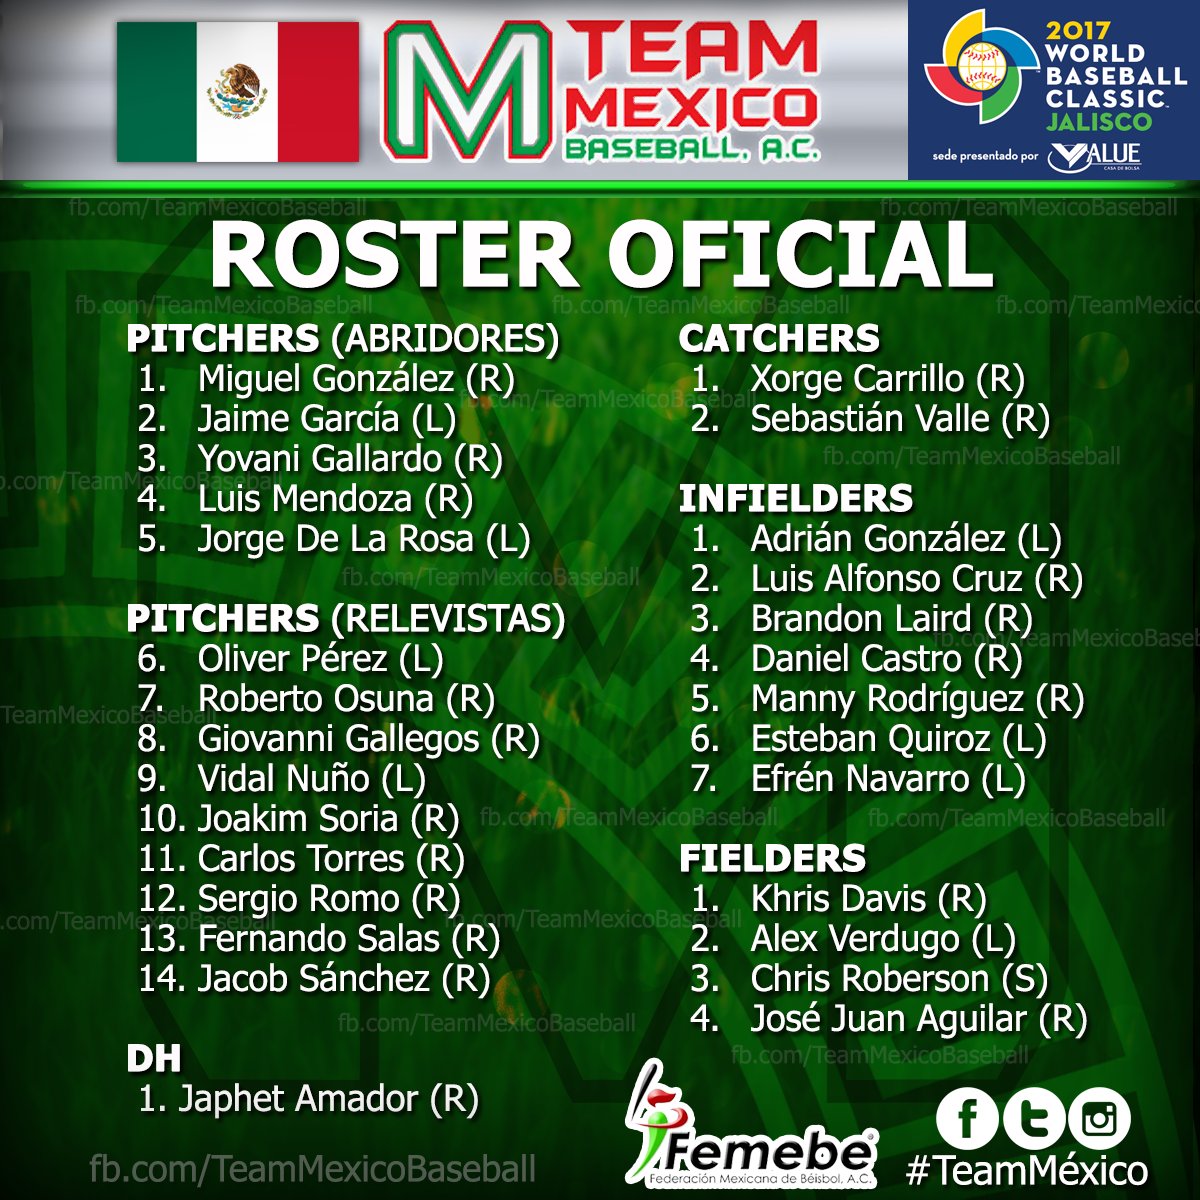 Roster Oficial Selección Mexicana presentamos Roster Oficial